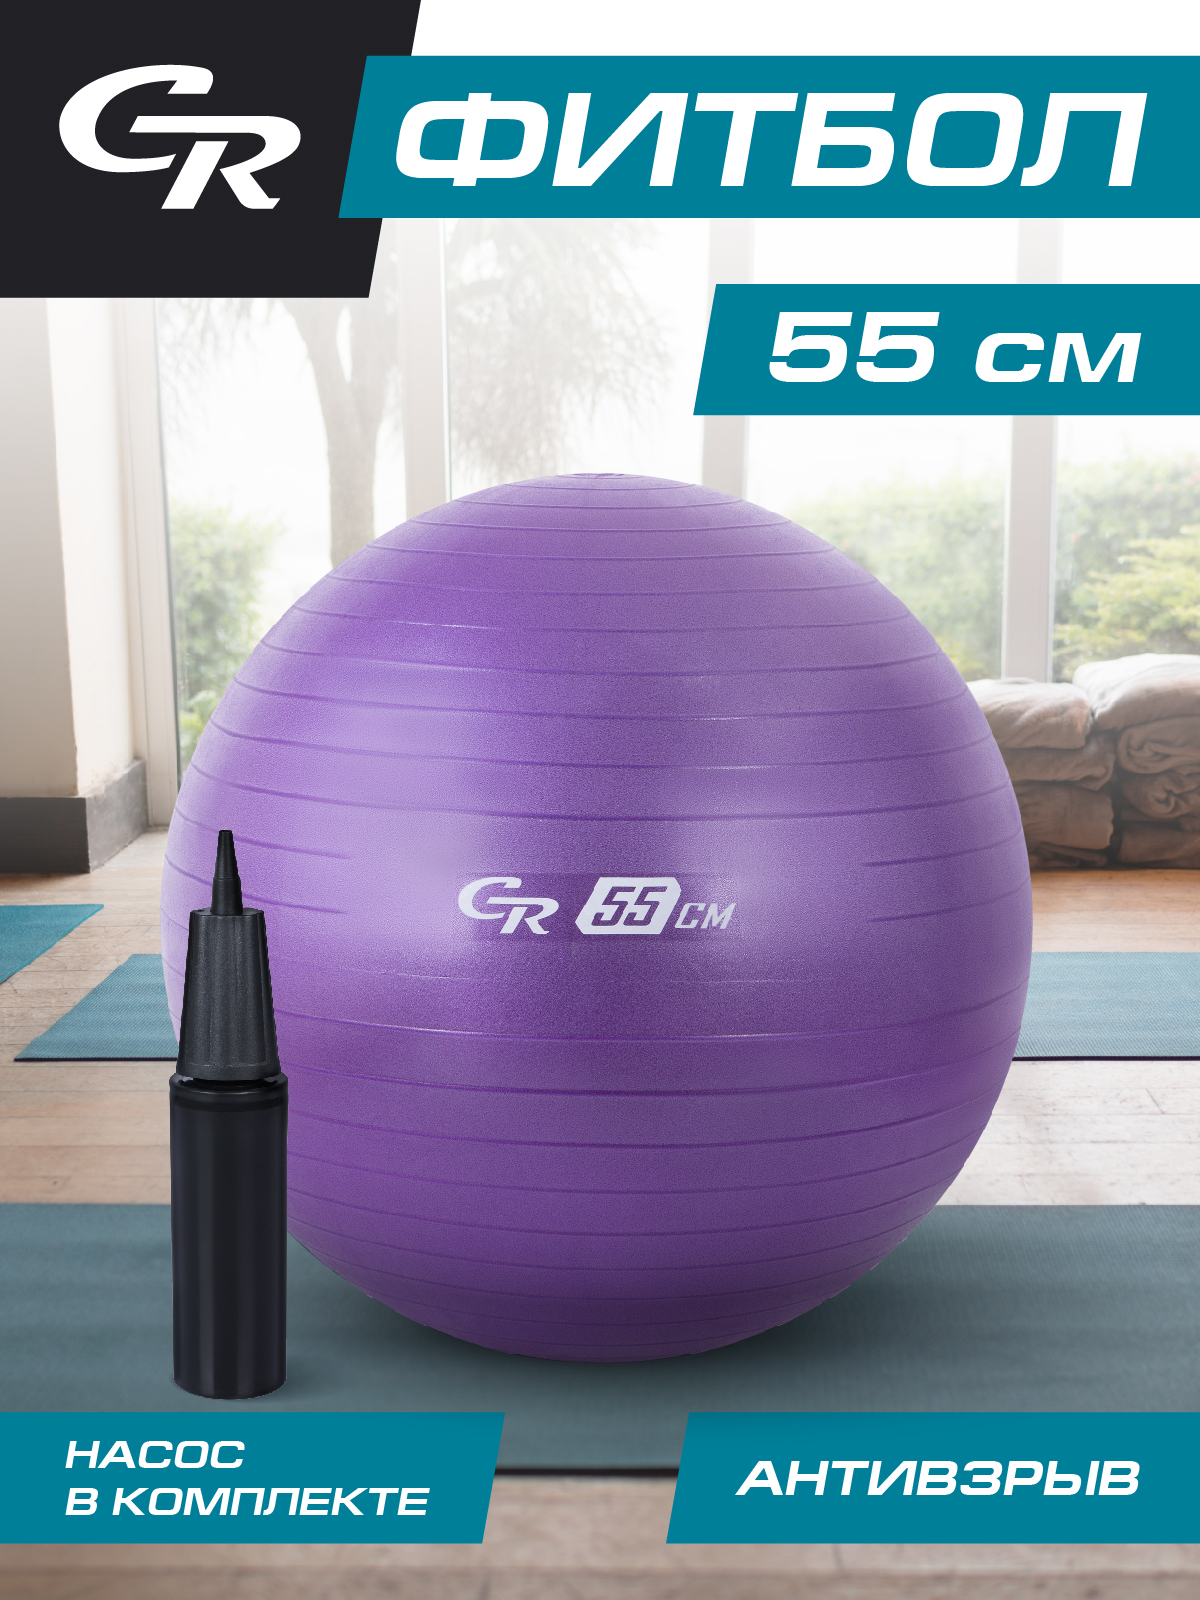 Мяч гимнастический ТМ City Ride, фитбол, антивзрыв, диаметр 55 см, ПВХ, в сумке, JB0211049